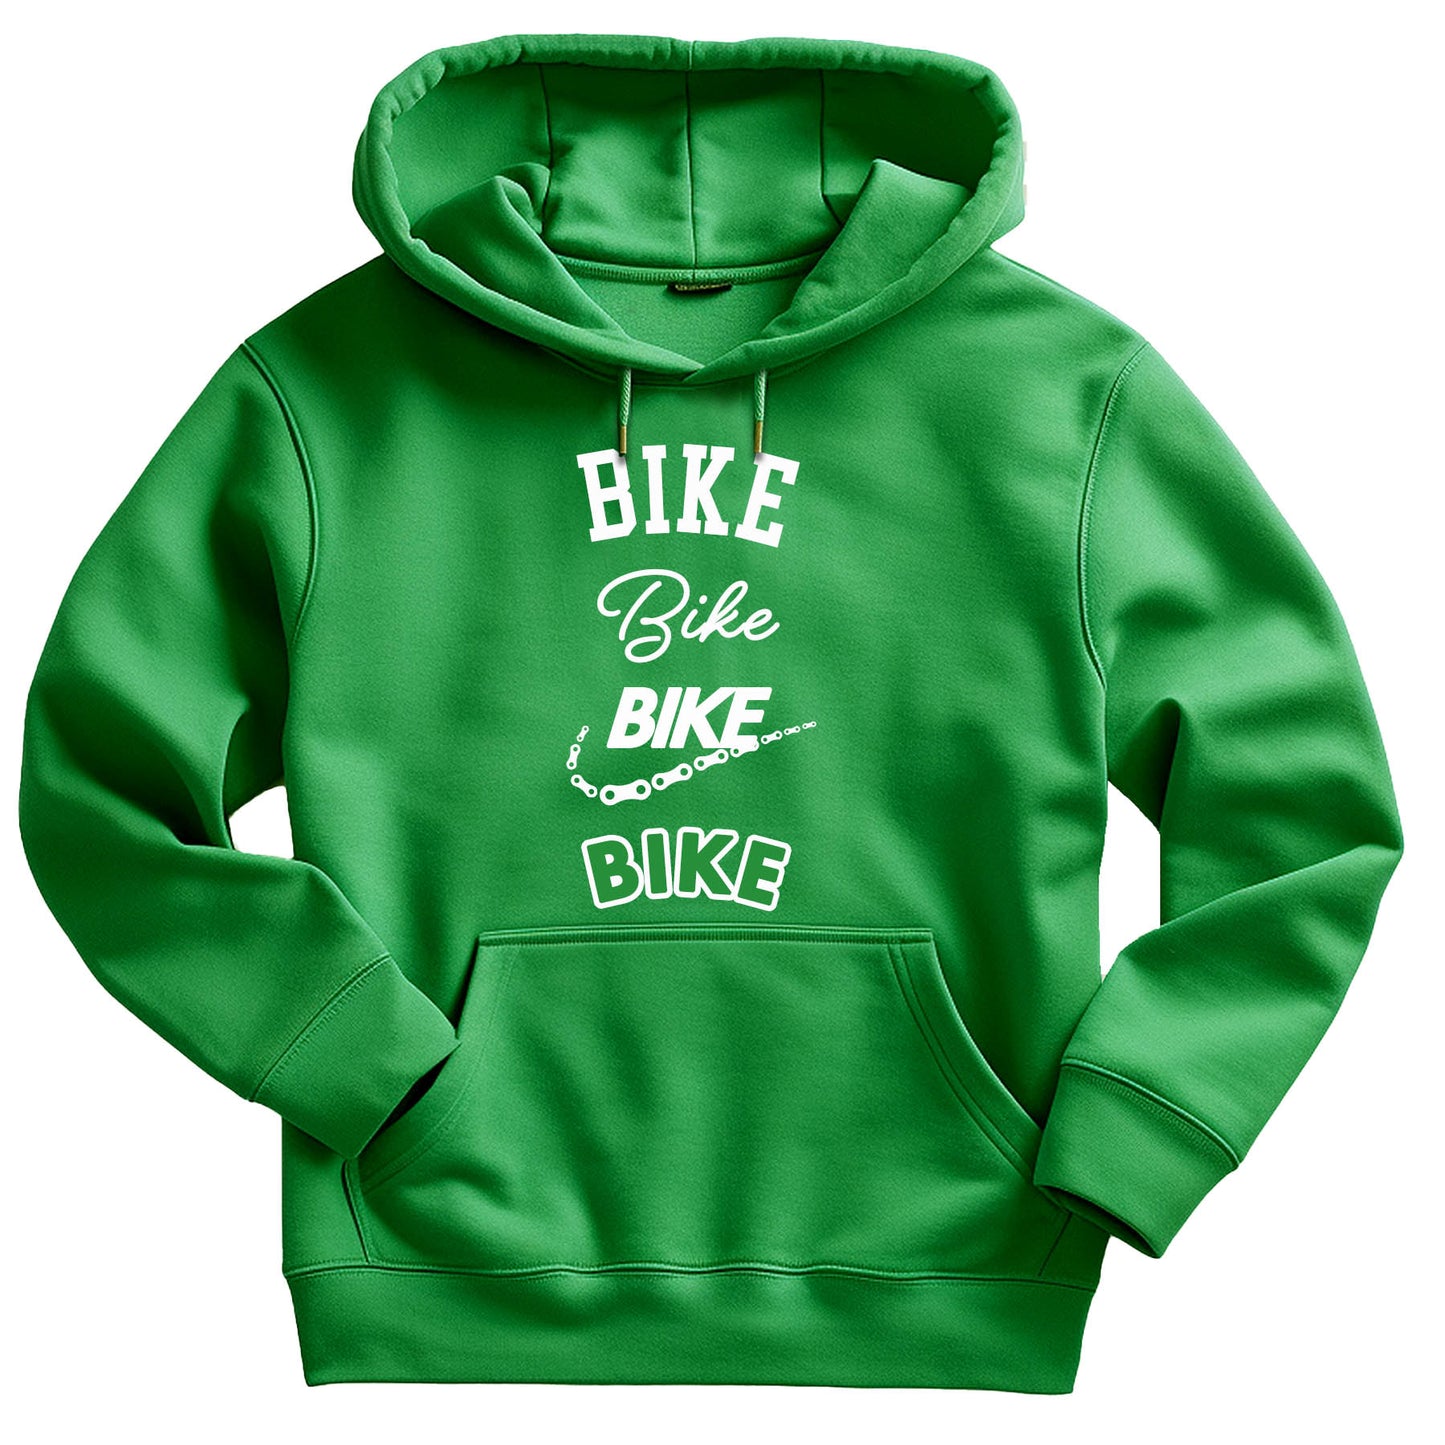 Bike Bike Bike Bike Sweatshirts